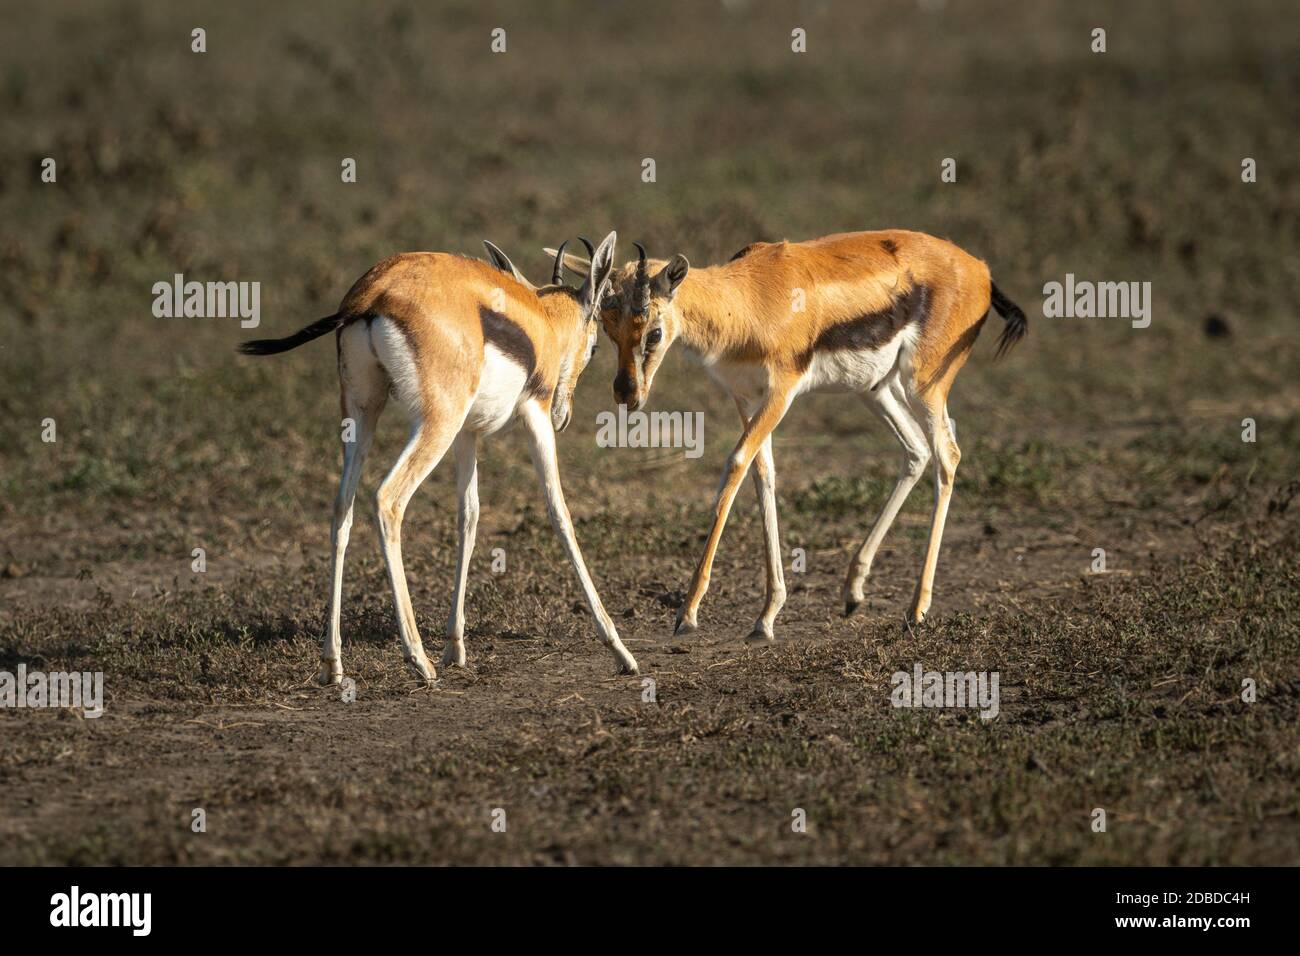 Two Thomson gazelle fighting on grassy plain Stock Photo